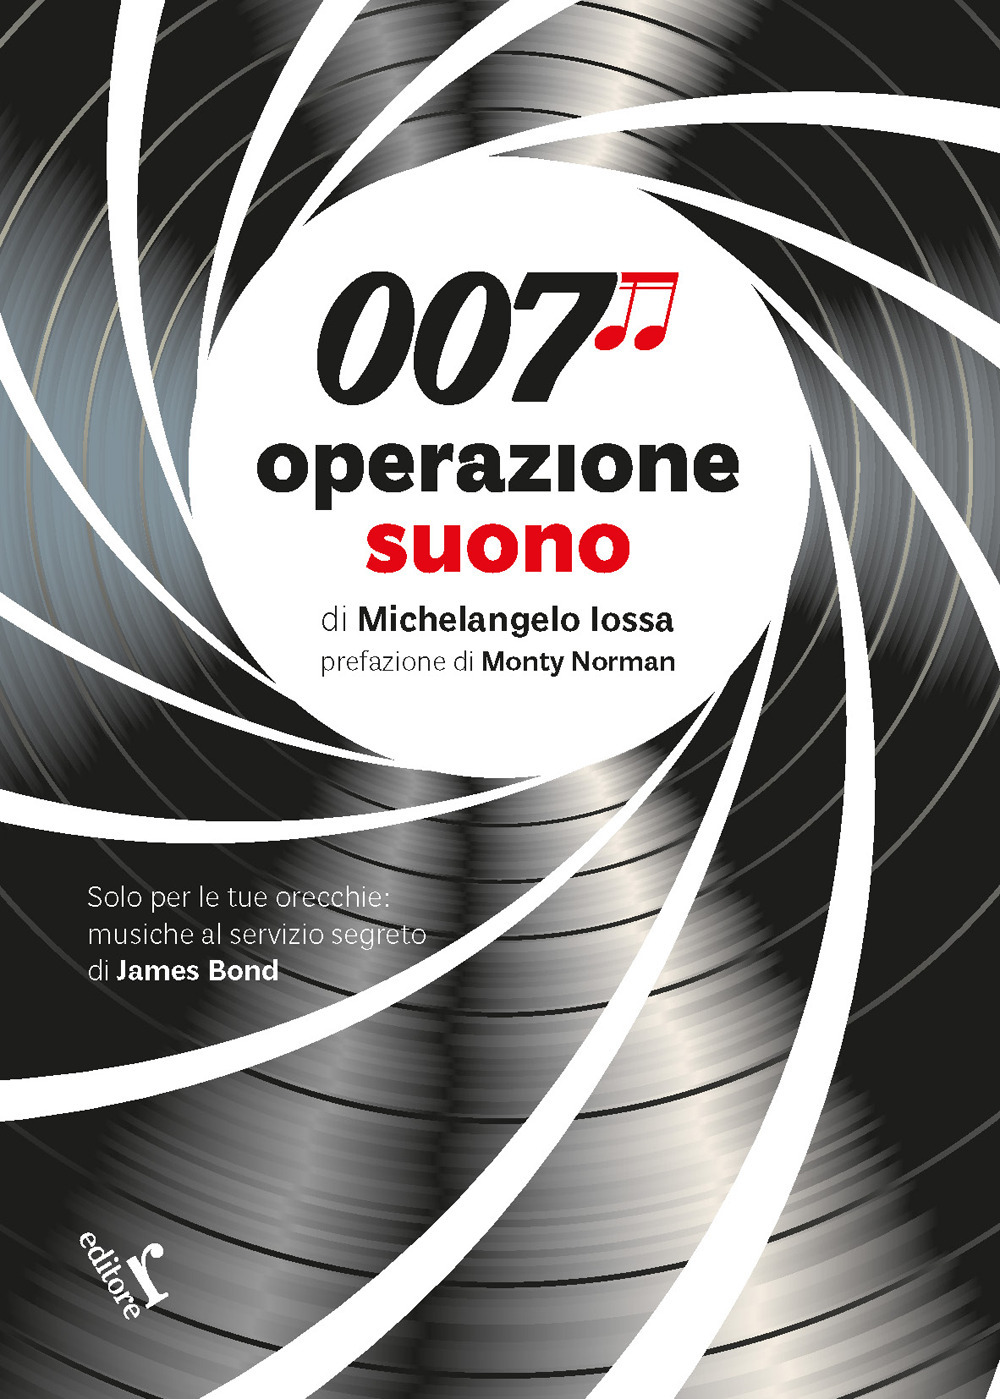 Image of 007 operazione suono